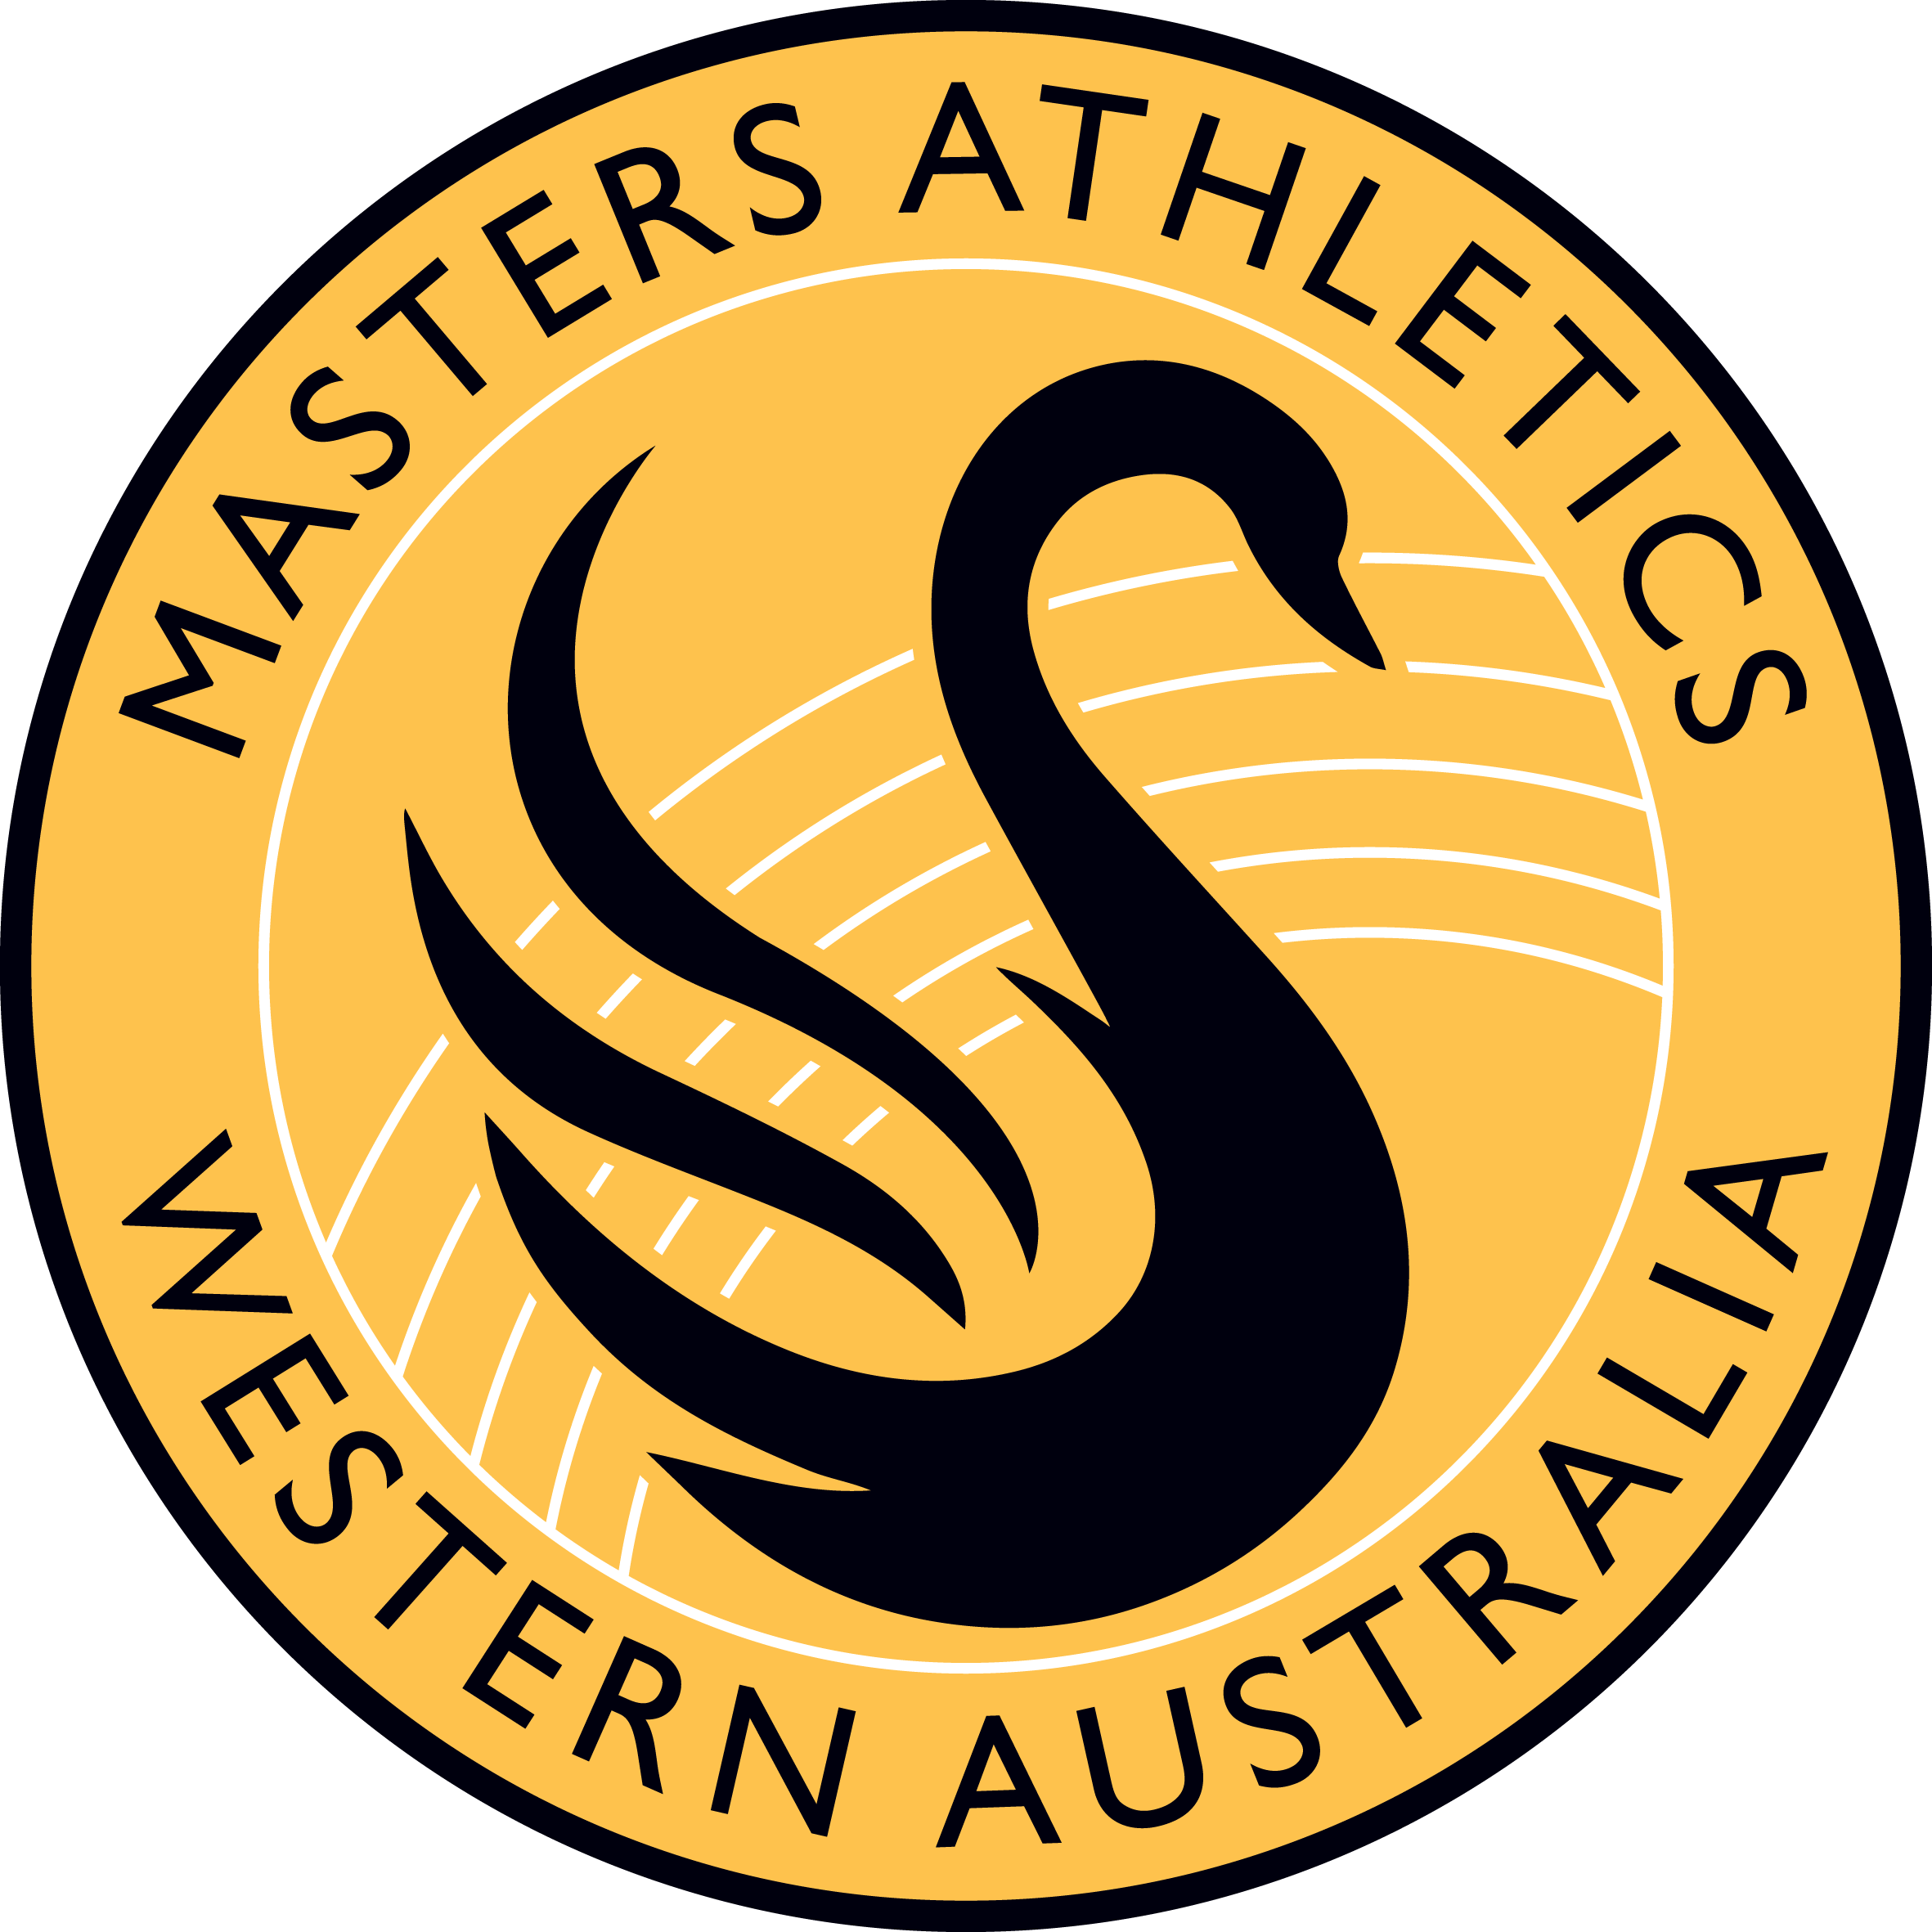 Masters Athletics Western Australia